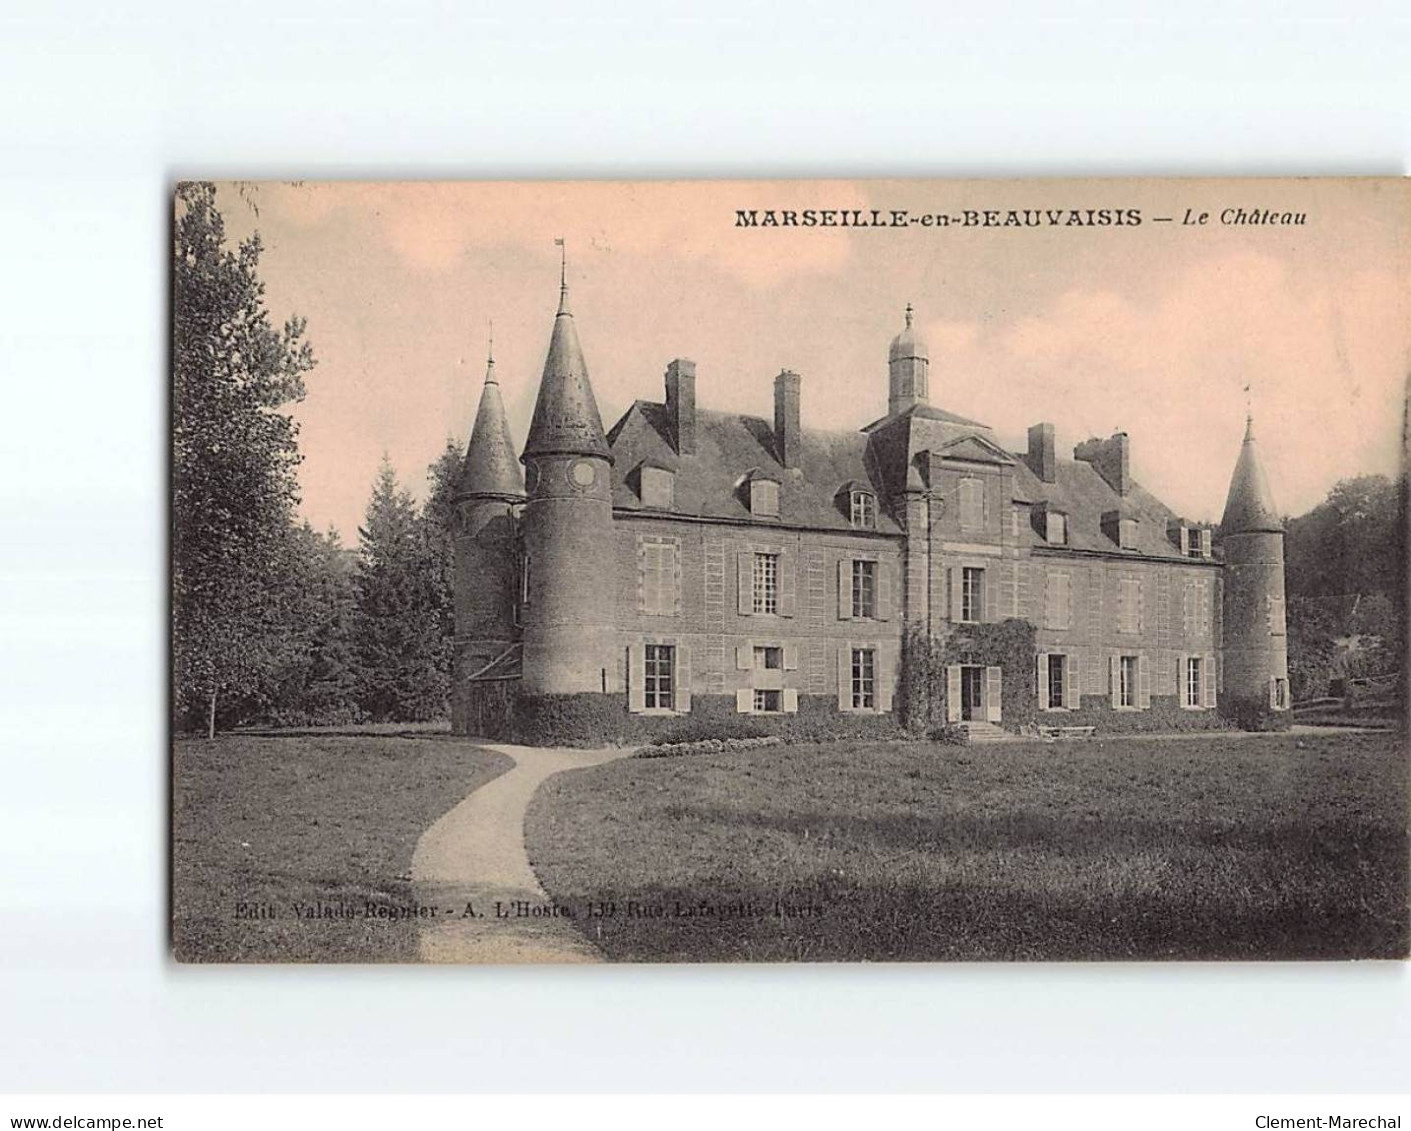 MARSEILLE EN BEAUVAISIS : Le Château - état - Marseille-en-Beauvaisis